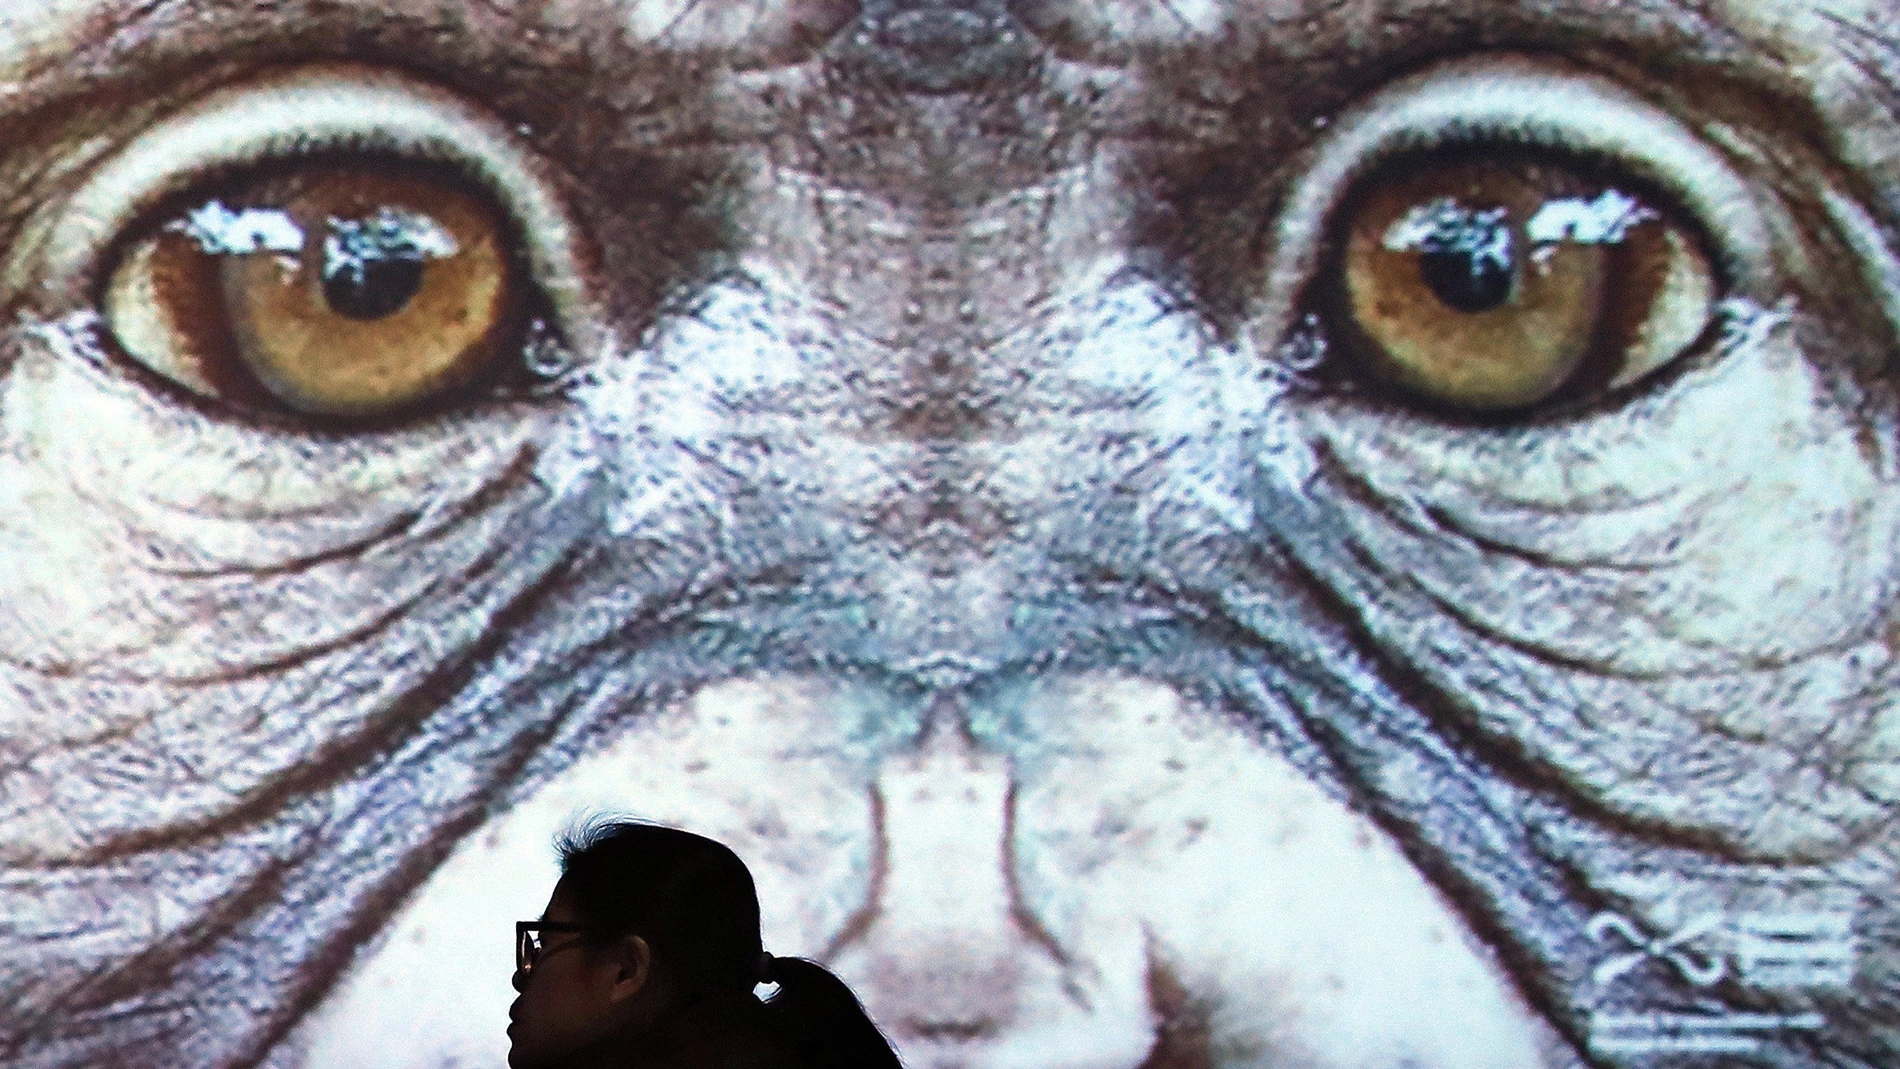 Familiarizarse con la diversidad de los primates, desde el lémur ratoncillo hasta los grandes gorilas, es el objetivo de la exposición "Monos, una historia de primates", que este miércoles inaugura el Museo de Ciencias Naturales de Barcelona. EFE/Andreu Dalmau